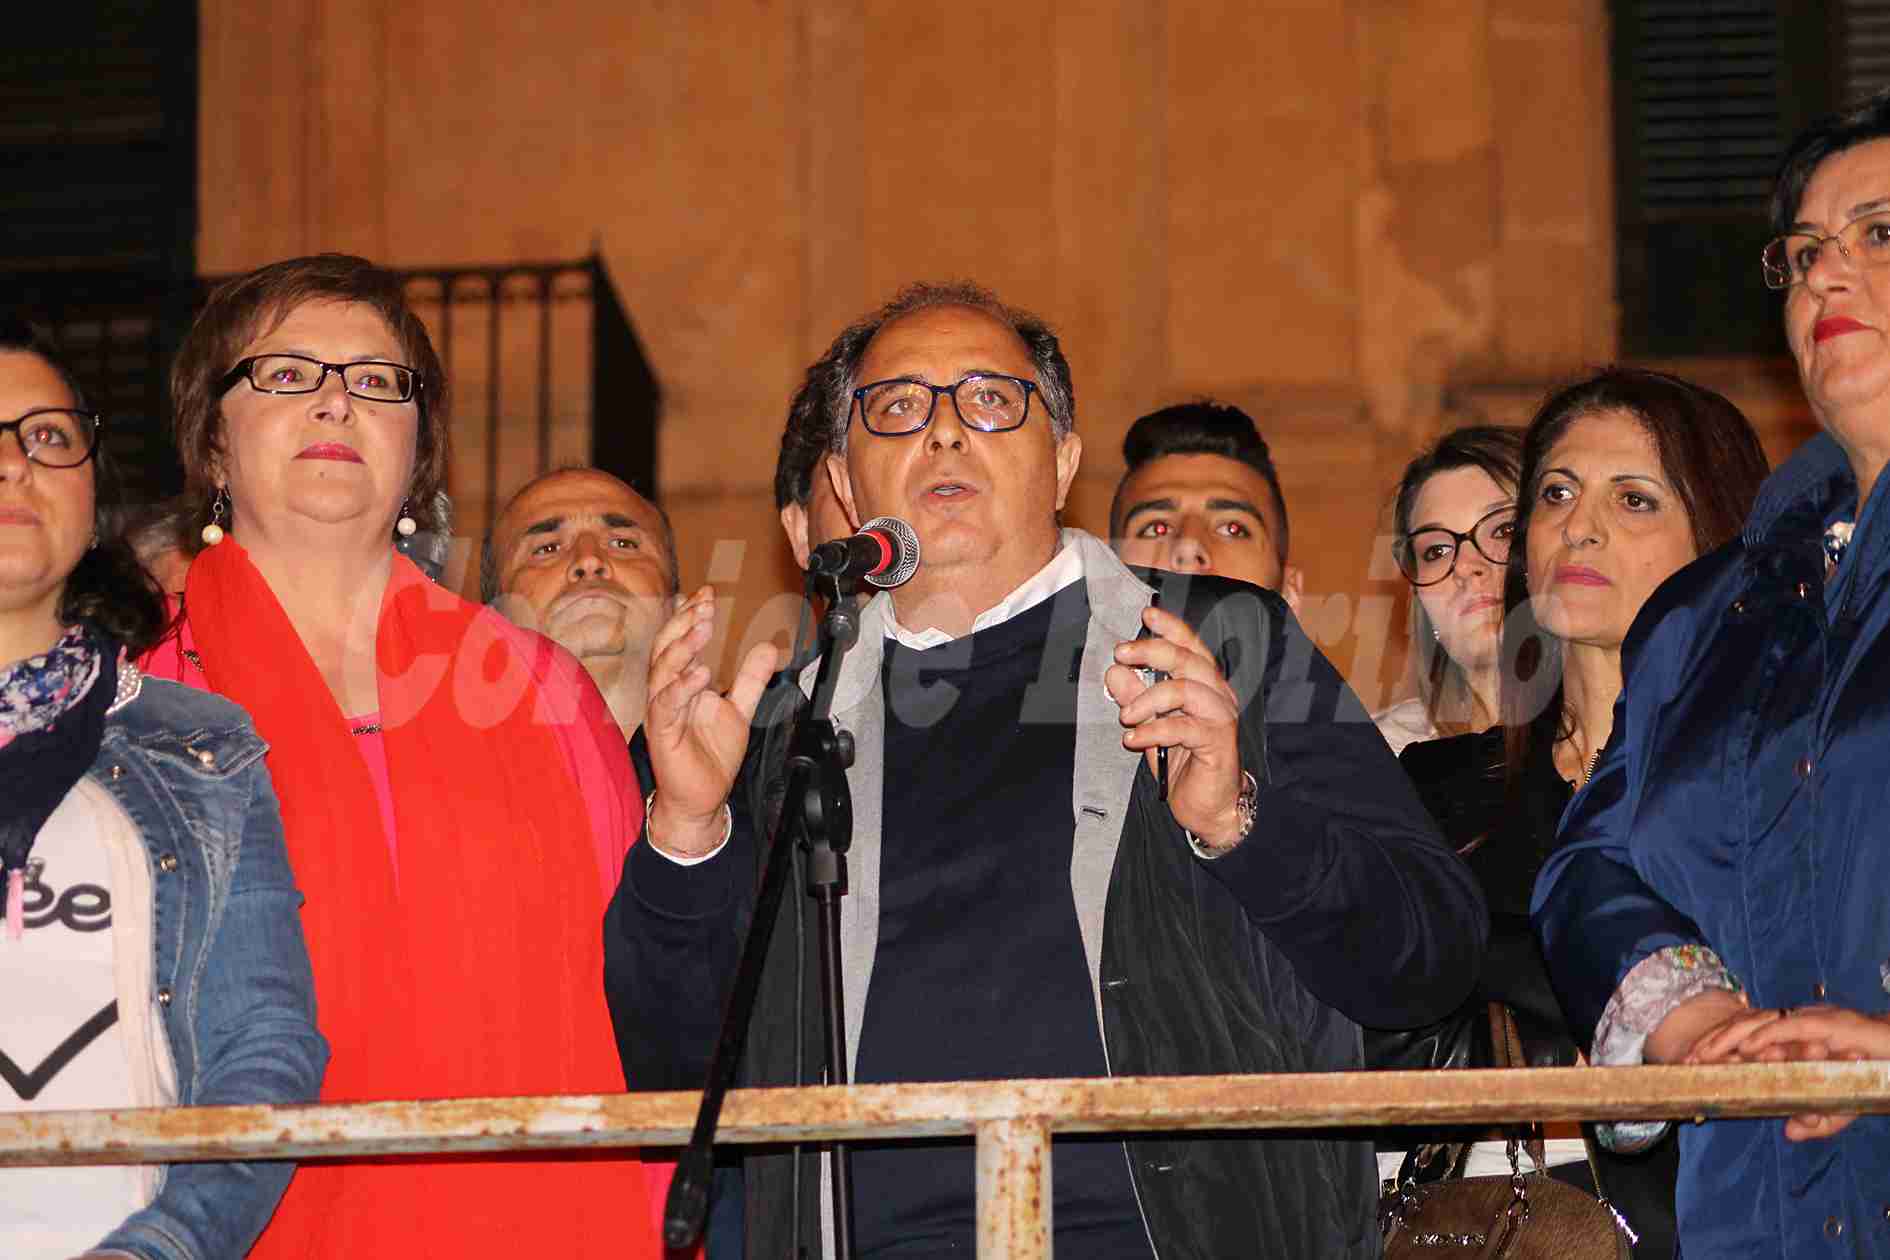 “Buona fortuna Rosolini, ne hai tanto bisogno”, Gennaro ritira la sua candidatura a sindaco